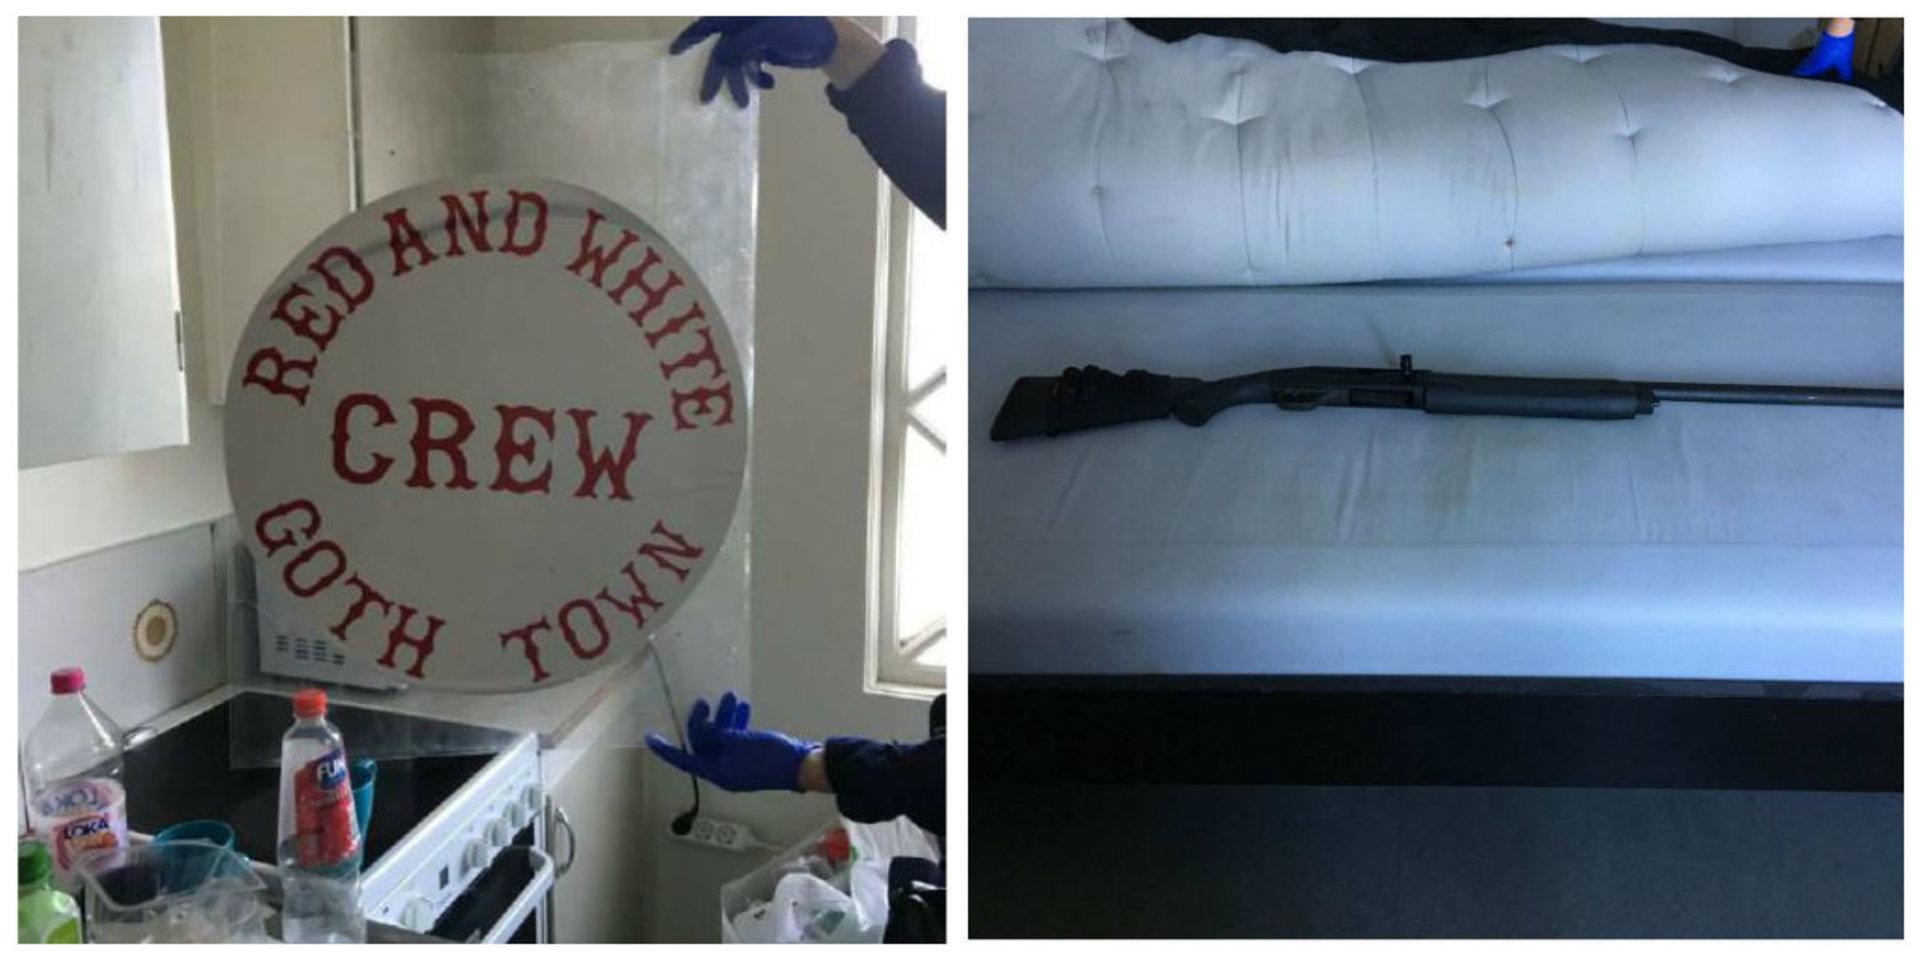 Fullt med HA-symboler och ett vapen i sängen. Det var vad polisen hittade i samband med husrannsakan.